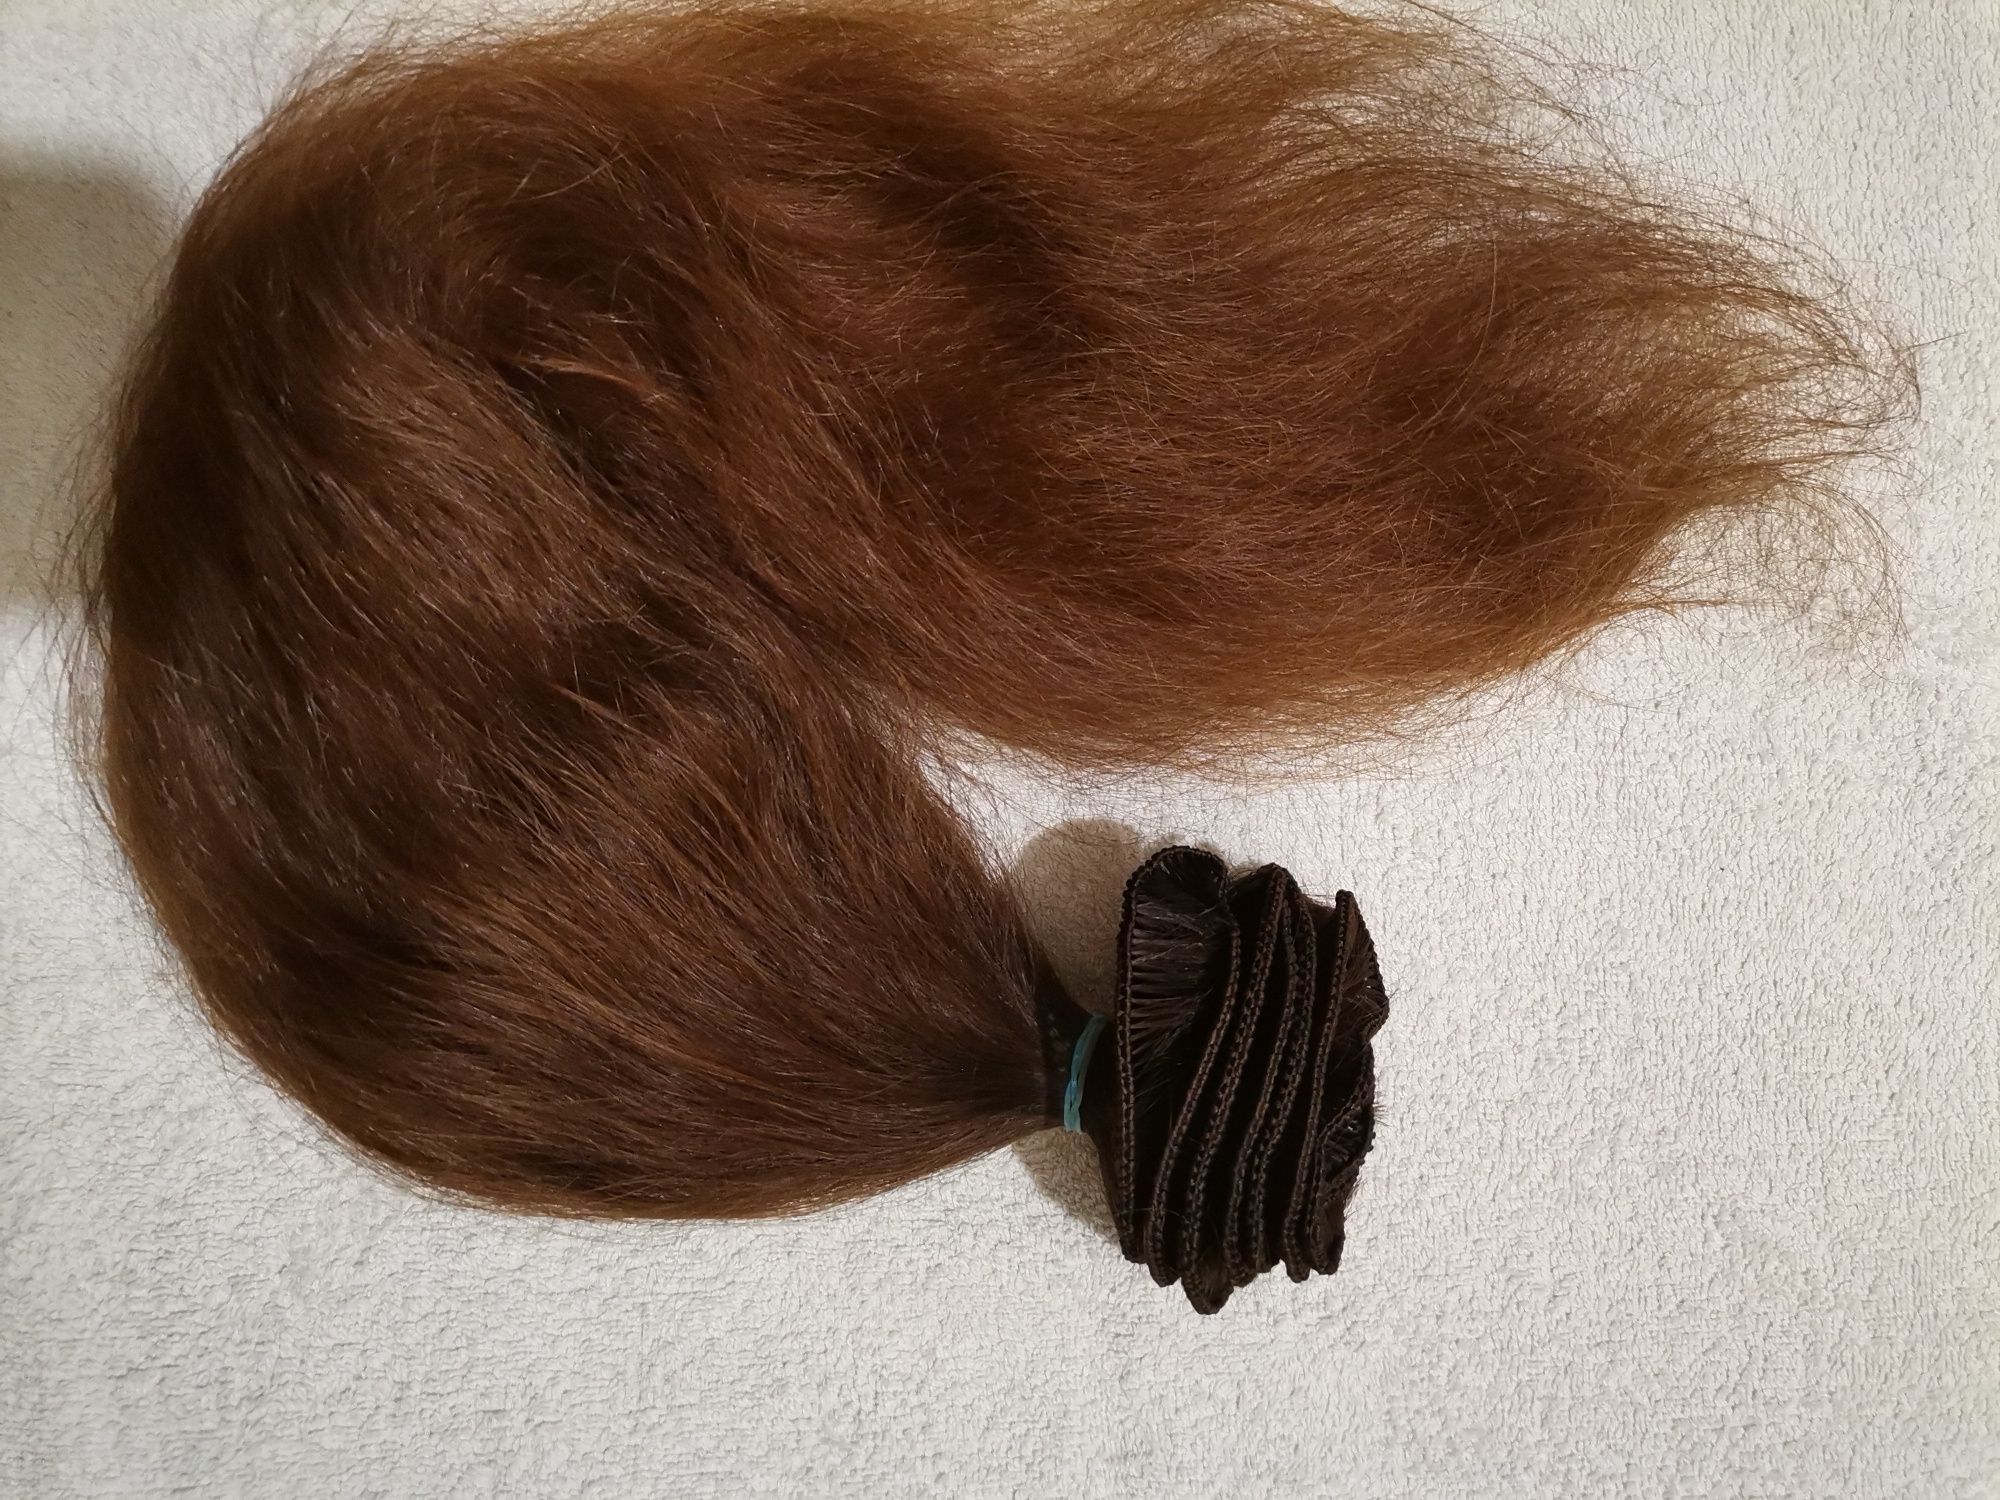 Ръчна изработка на треси редове кератинови кичури от естествена коса.